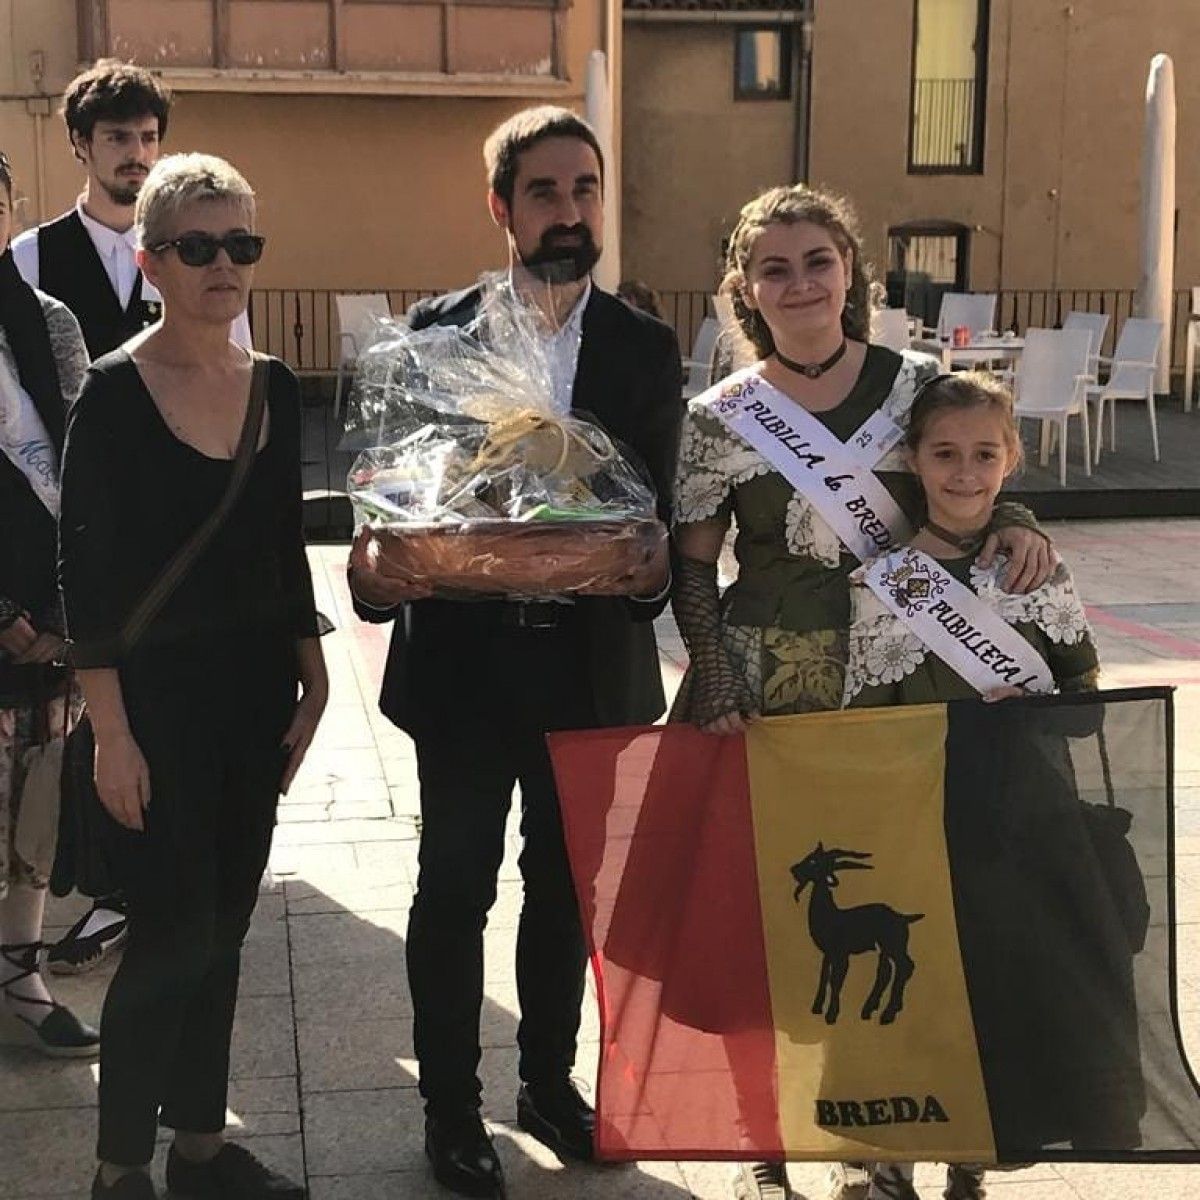 La representació de Breda a Gironella en l'elecció de la Pubilla i l'Hereu de Cataqlunya 2018